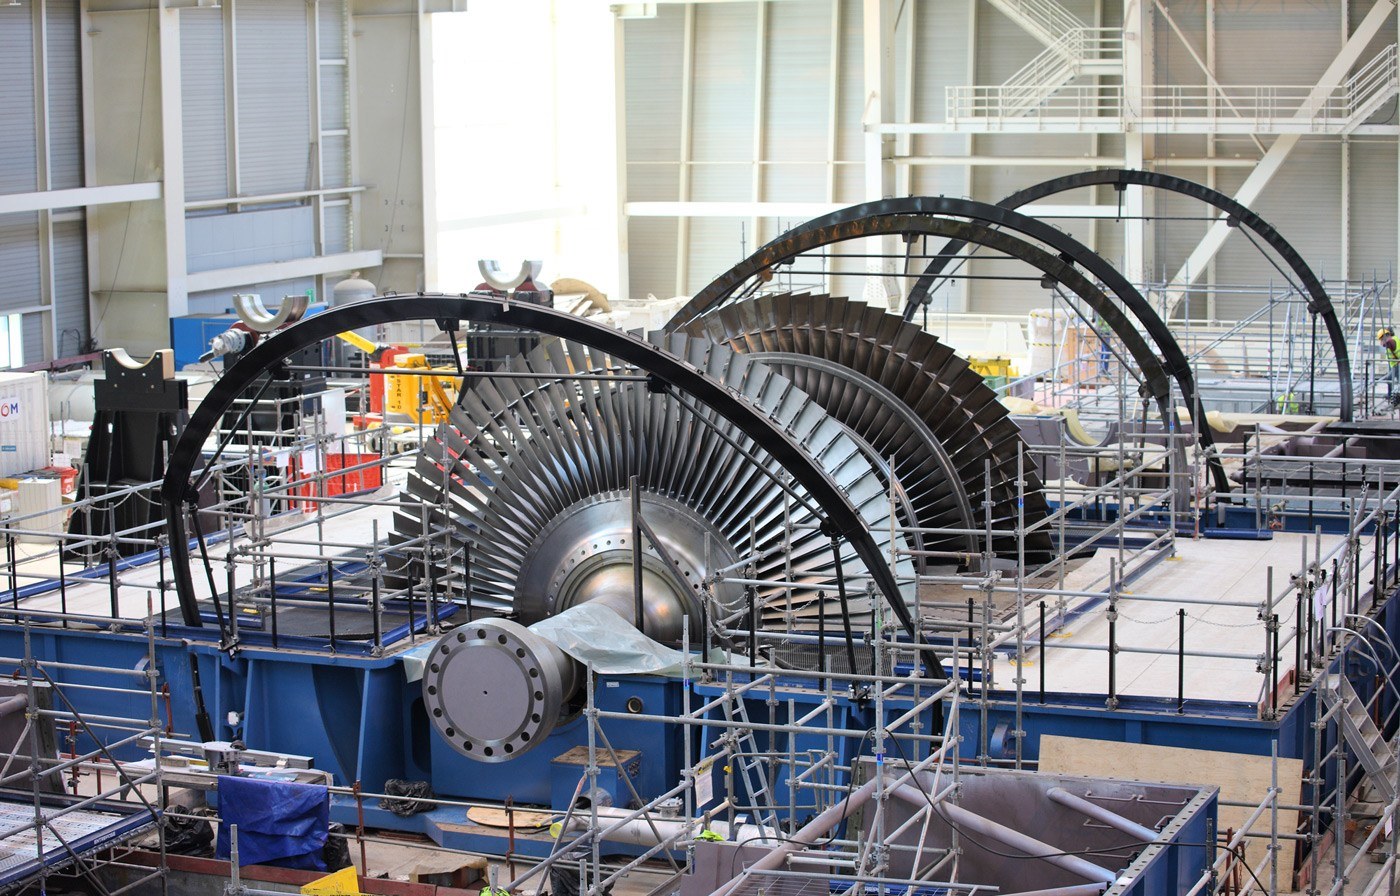 A GE szállíthat turbinaszigeteket az első török atomerőmű számára